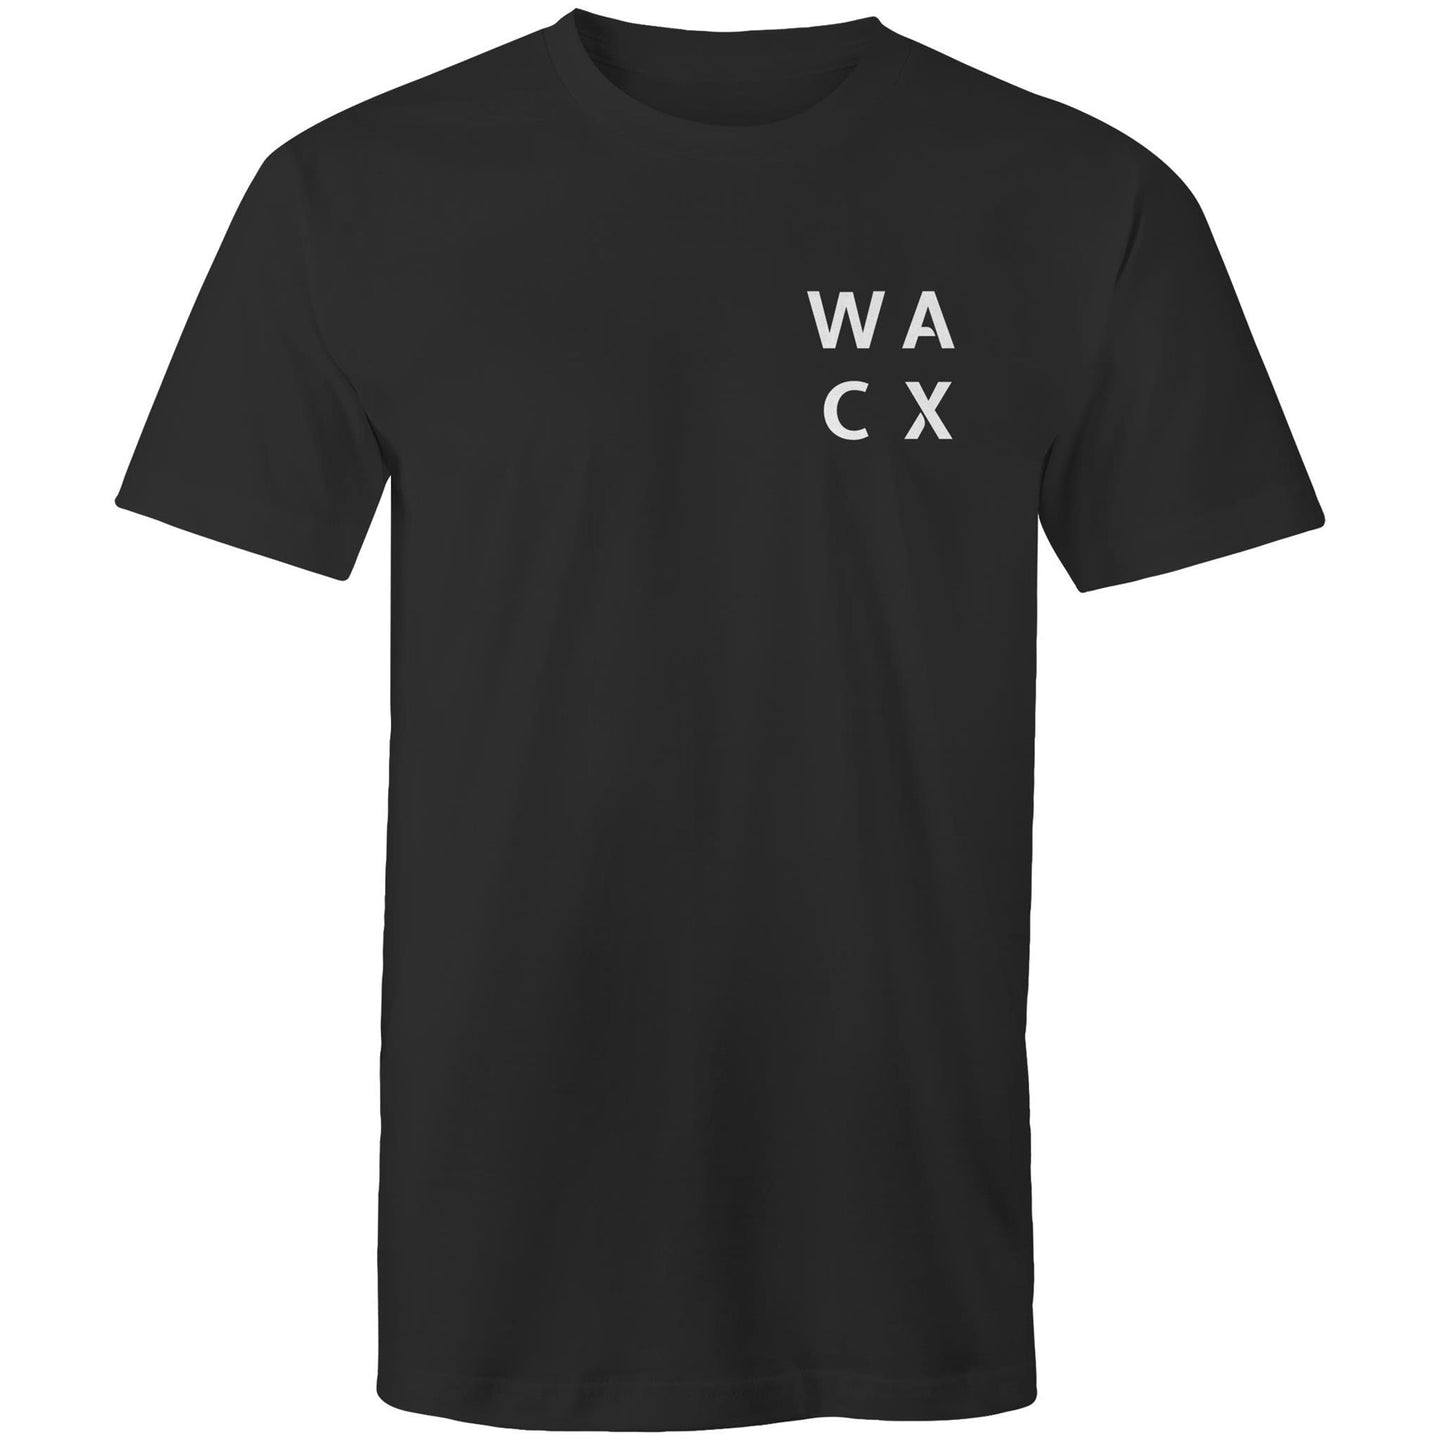 WACX Men's T-Shirt - Black